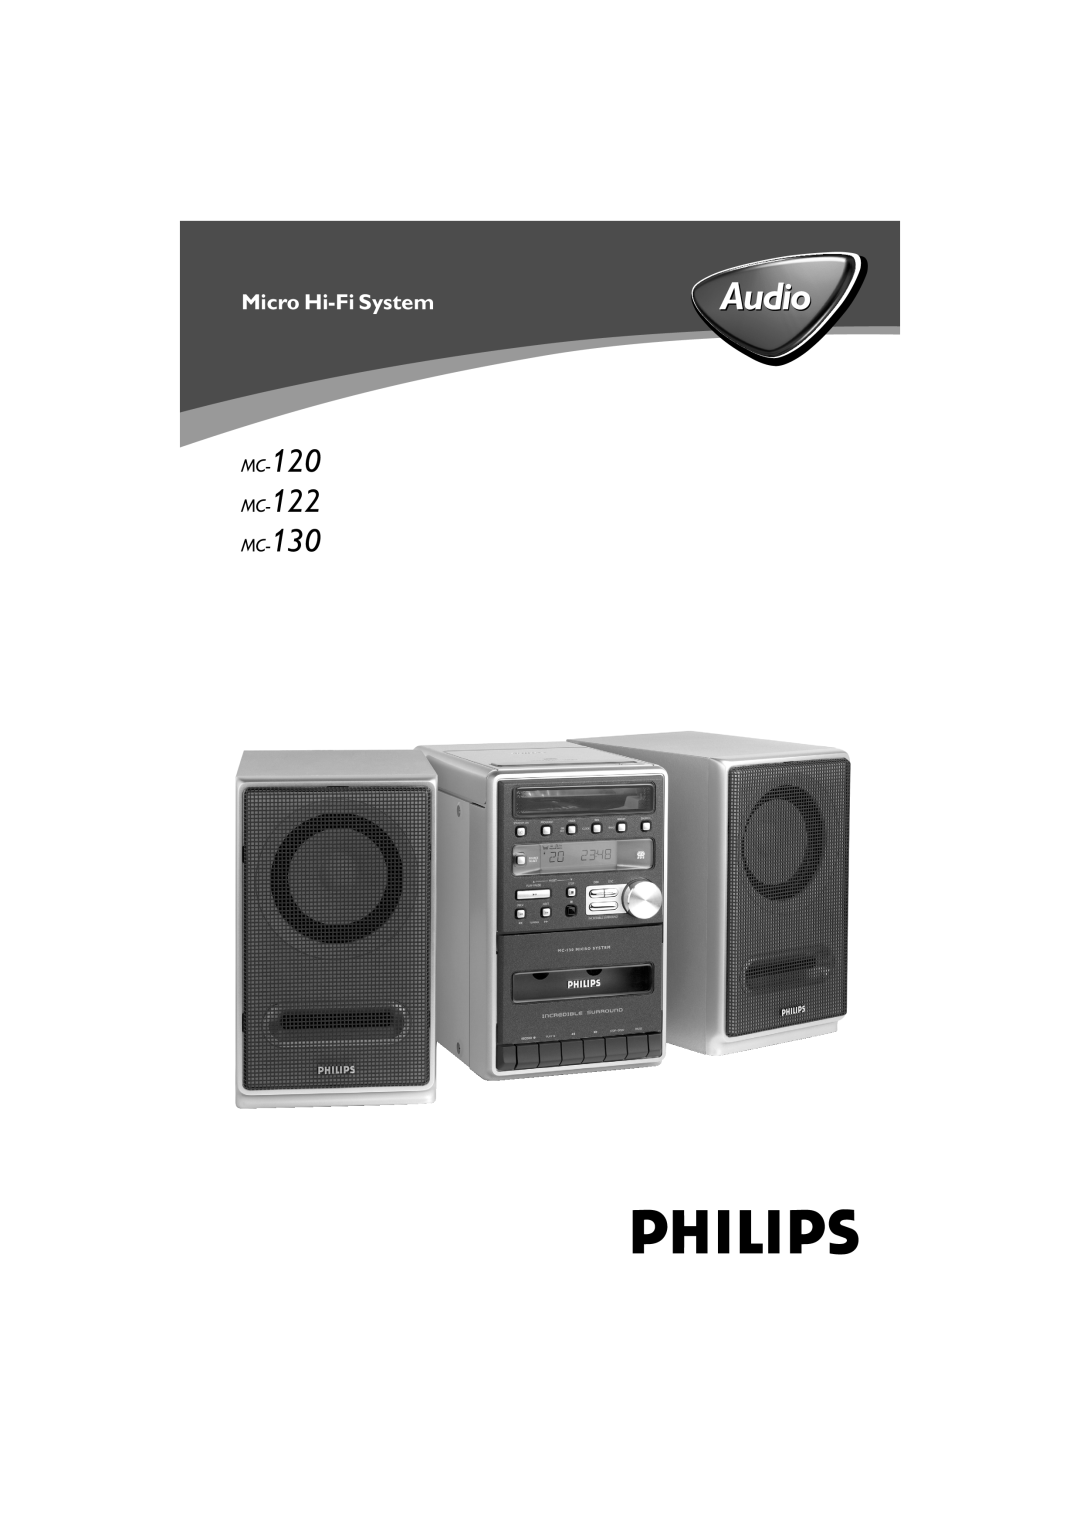 Philips manual Audio, Micro Hi-FiSystem, MC-120 MC-122 MC-130 